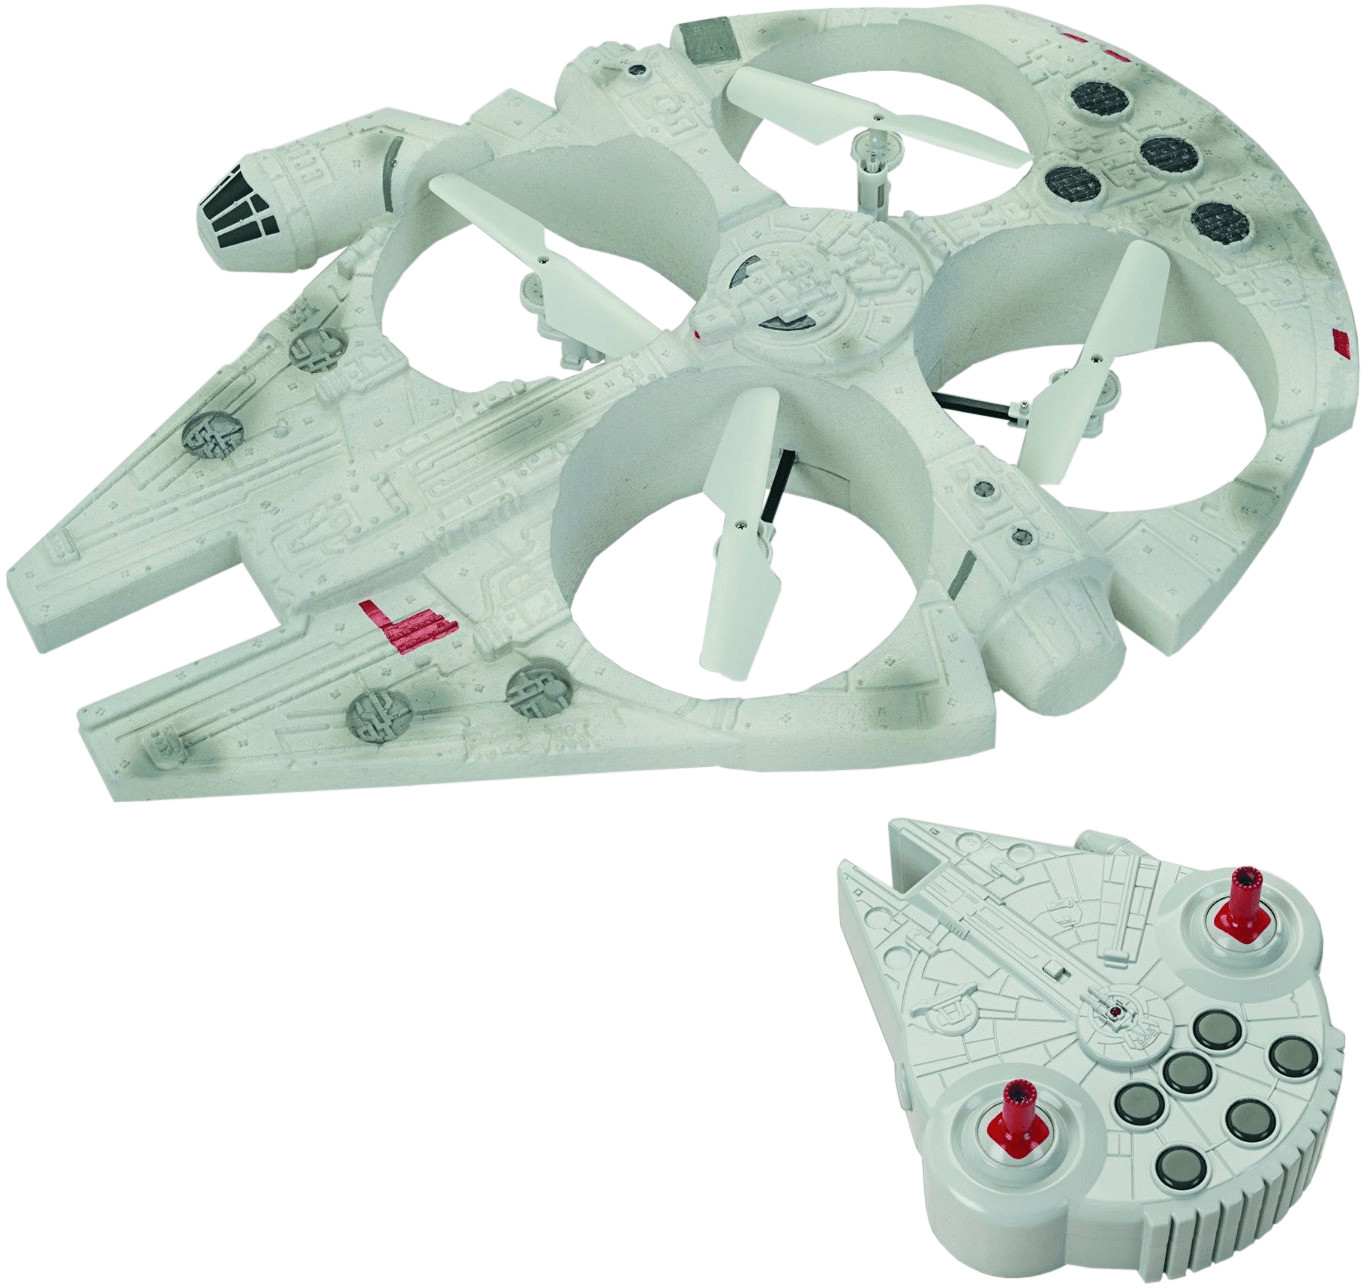 Giochi Preziosi Star-Wars - Millenium Falcon FC Flying Drone